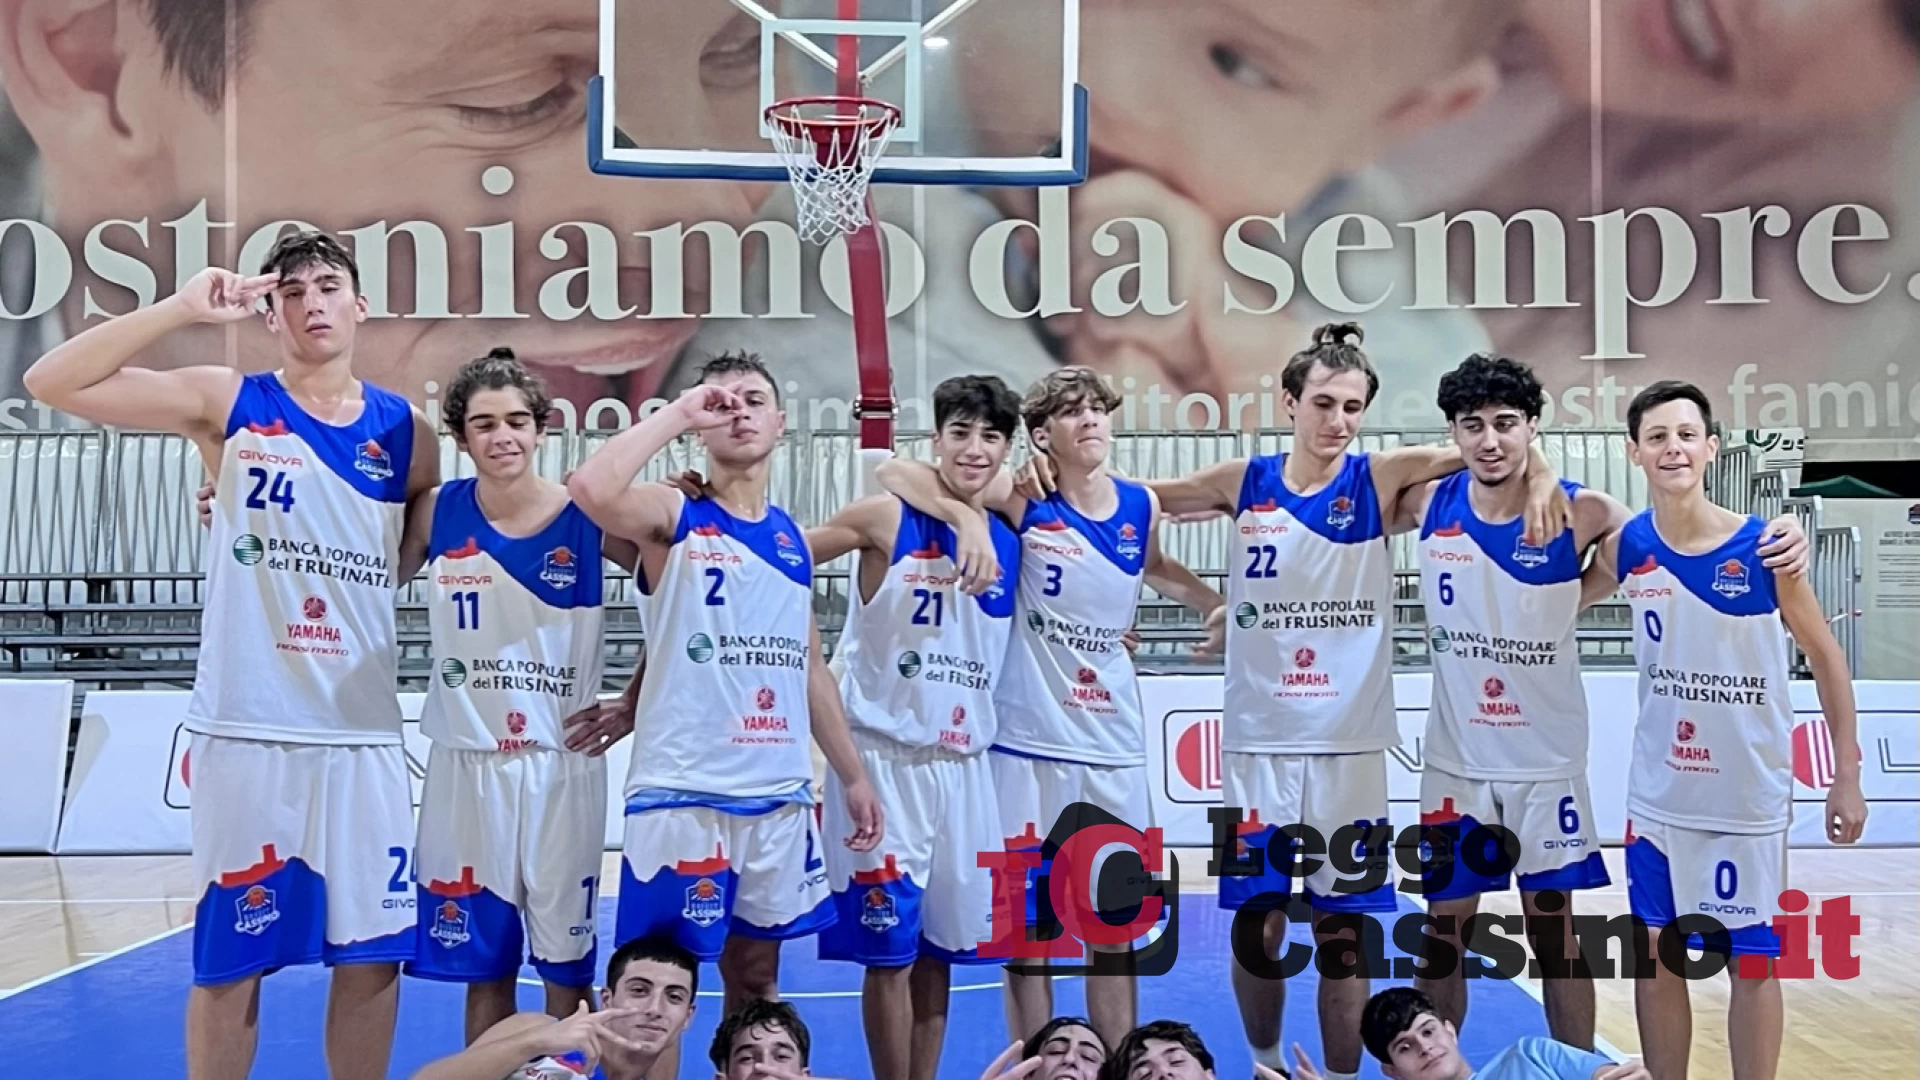 L’under 17 Eccellenza dell’A.D. Basket Cassino trionfa in casa contro la Stella Azzurra Viterbo